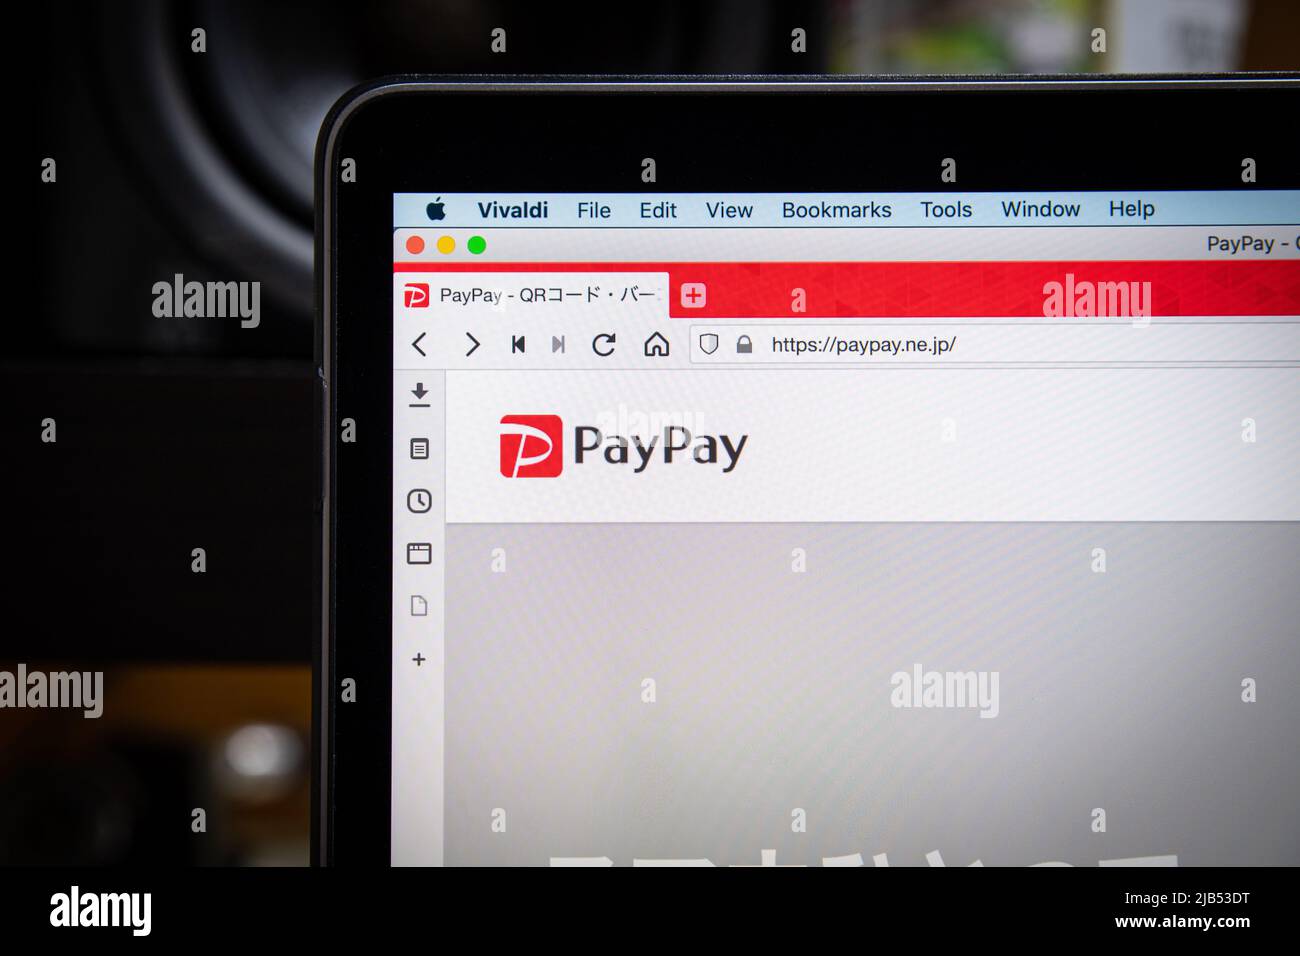 Kumamoto / JAPON - septembre 8 2020 : Fermer le logo PayPay sur l'ordinateur portable. Paypay est une coentreprise établie par SoftBank Corp. Et Yahoo Japan Corporation. Banque D'Images